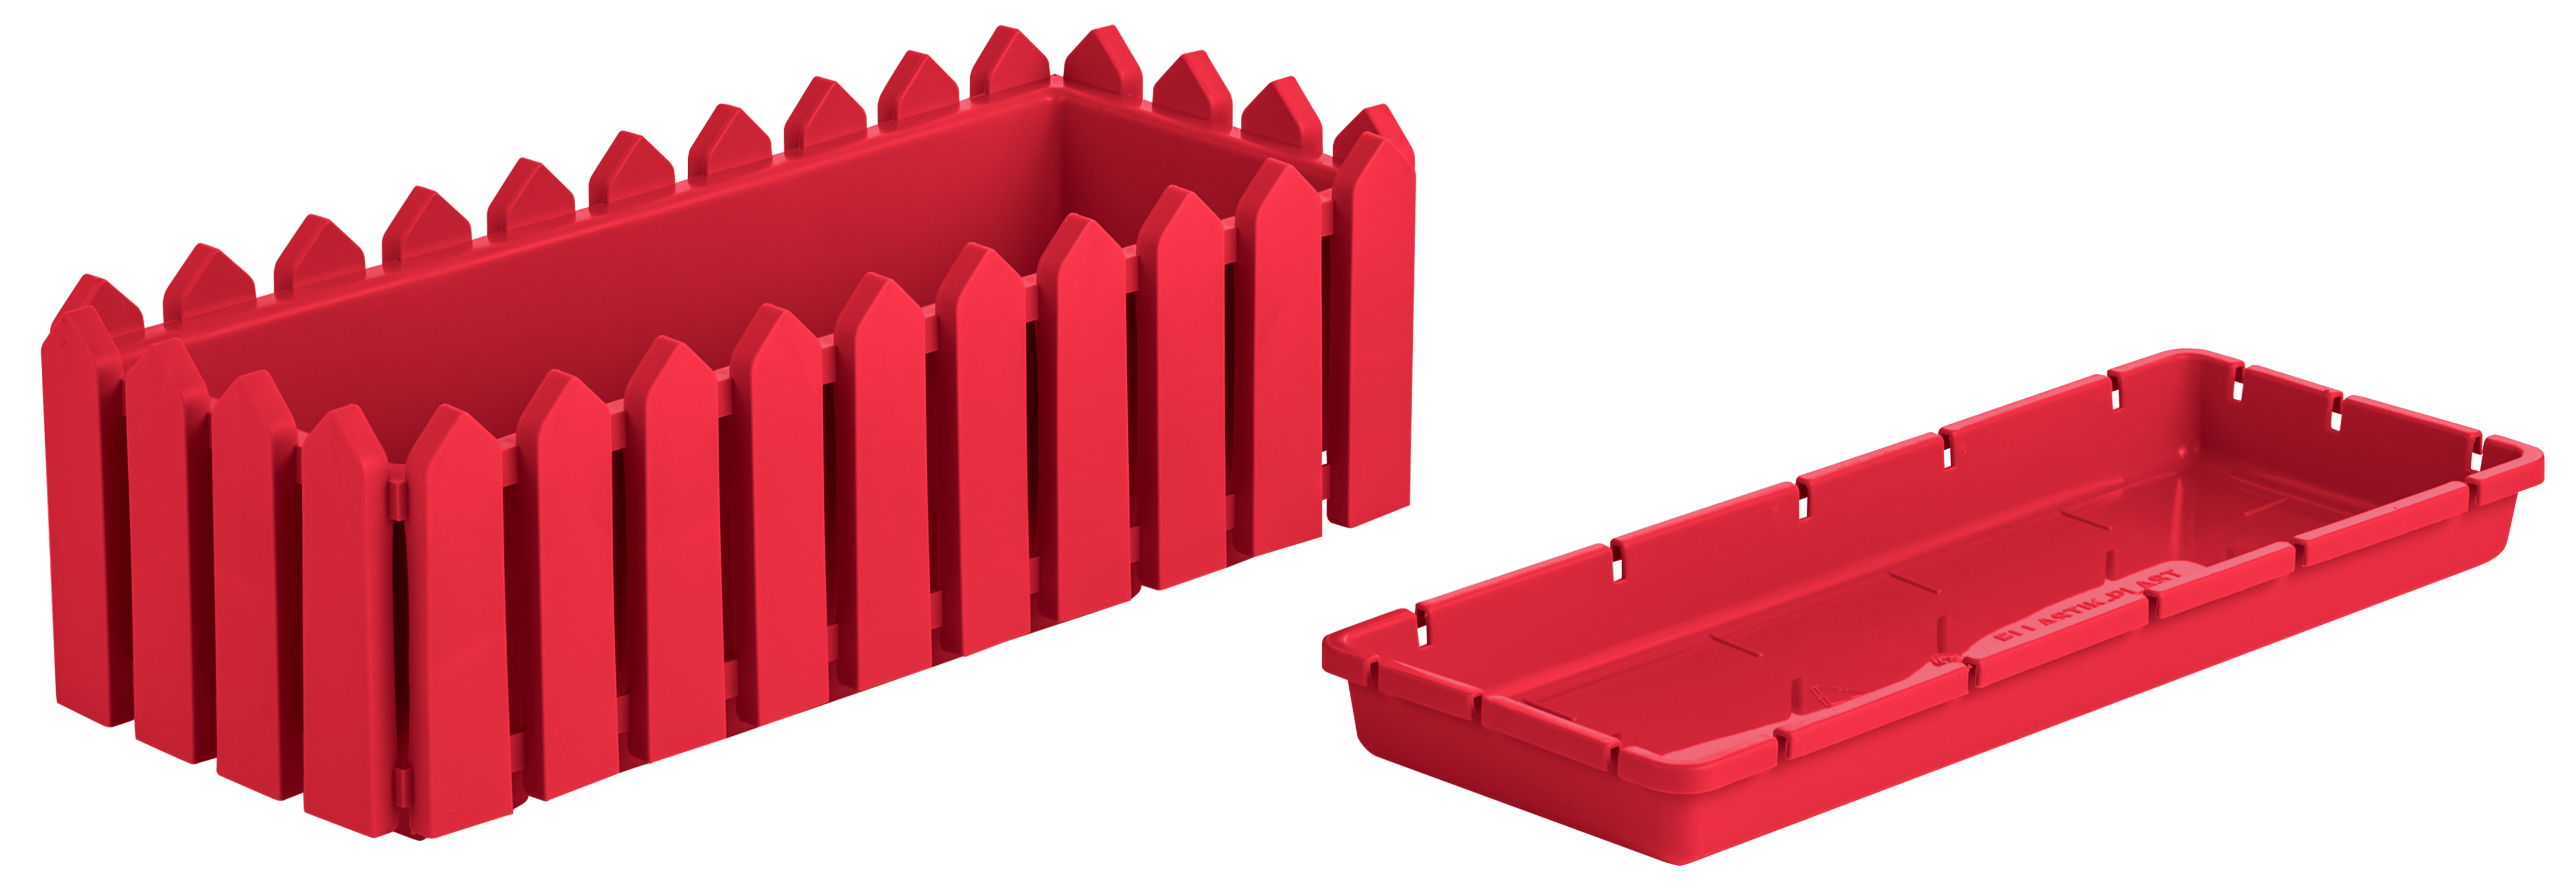 Балконный ящик Элластик-Пласт с поддоном лардо ЭП 012931 красный 1 шт.